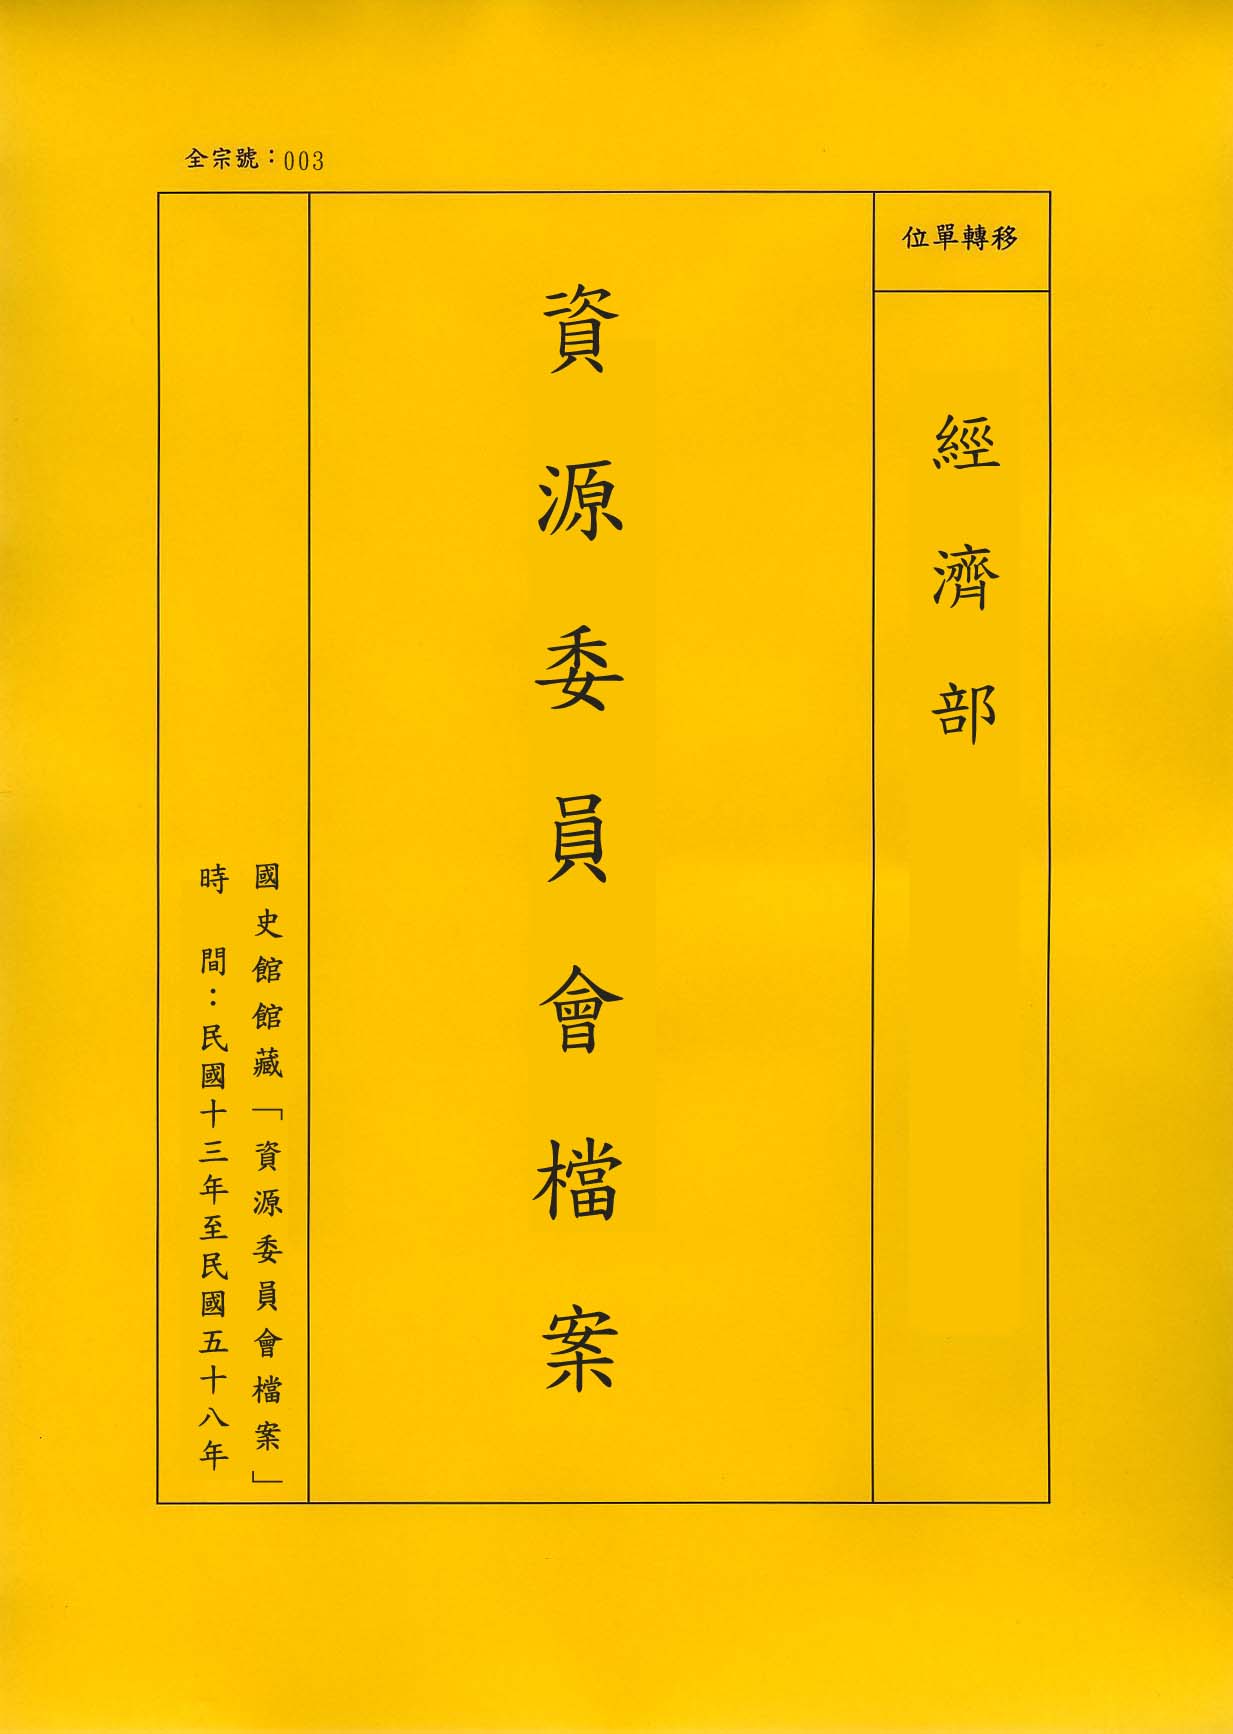 卷名:長江三峽水利開發計畫(二)(003-020200-0683)